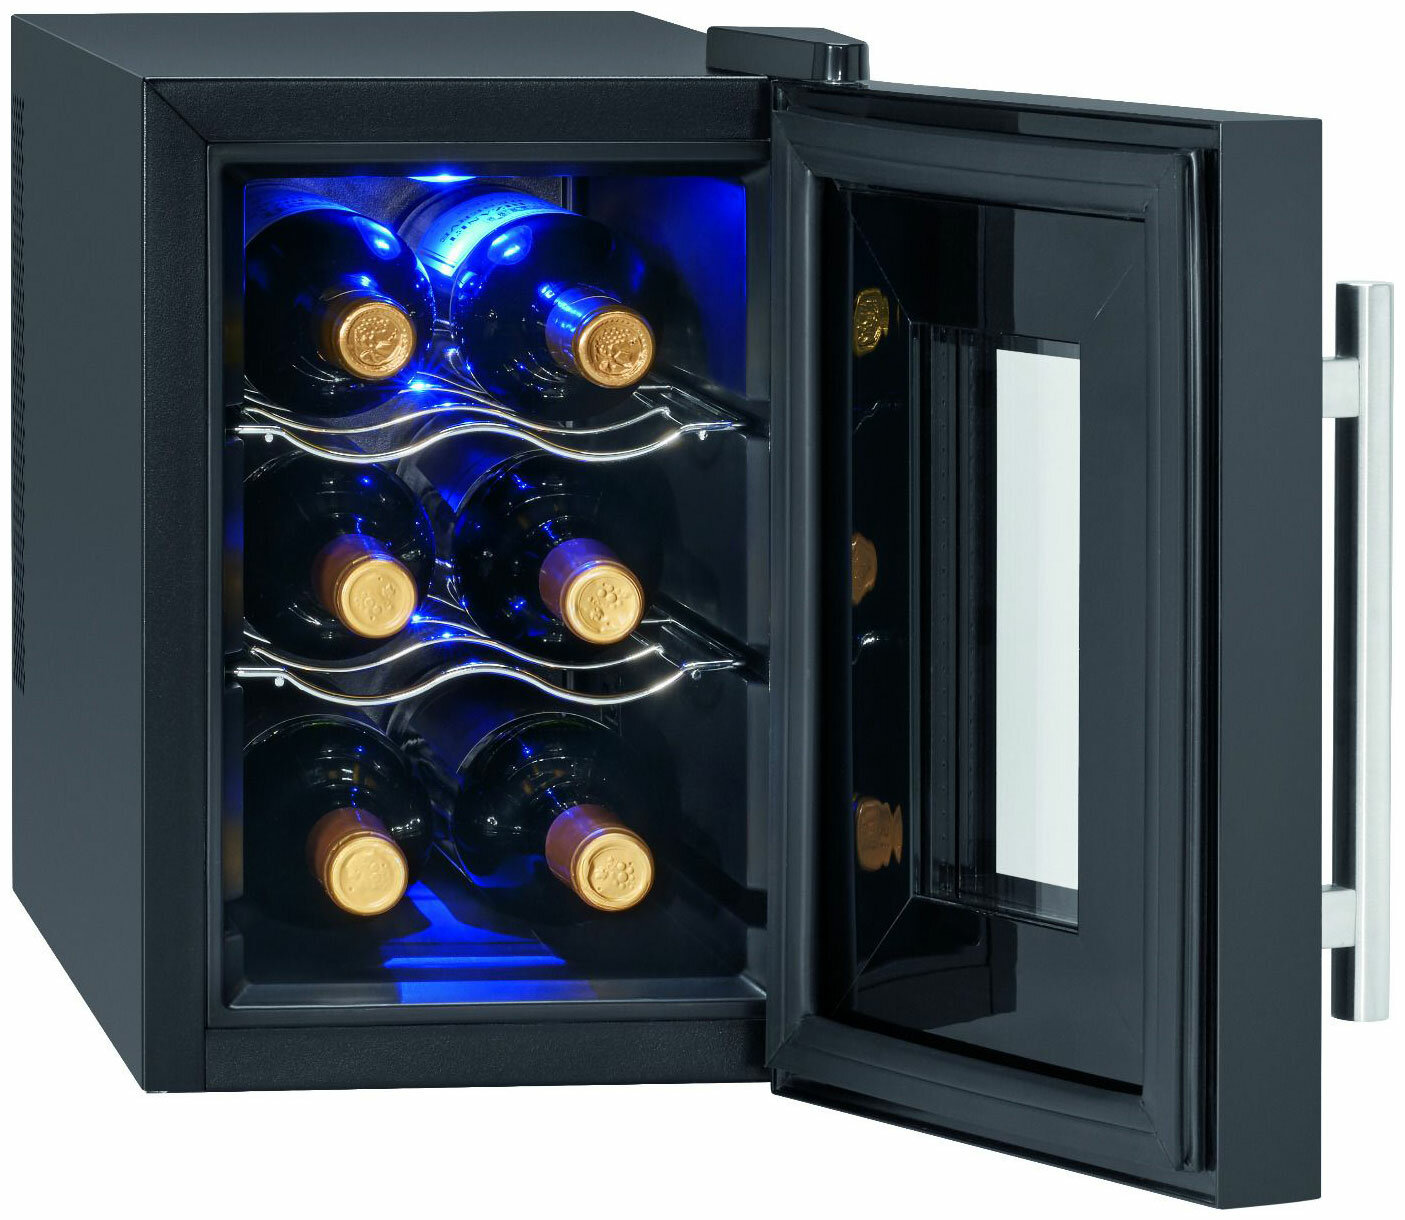 Холодильник винный Profi Cook PC-WK 1230 schwarz